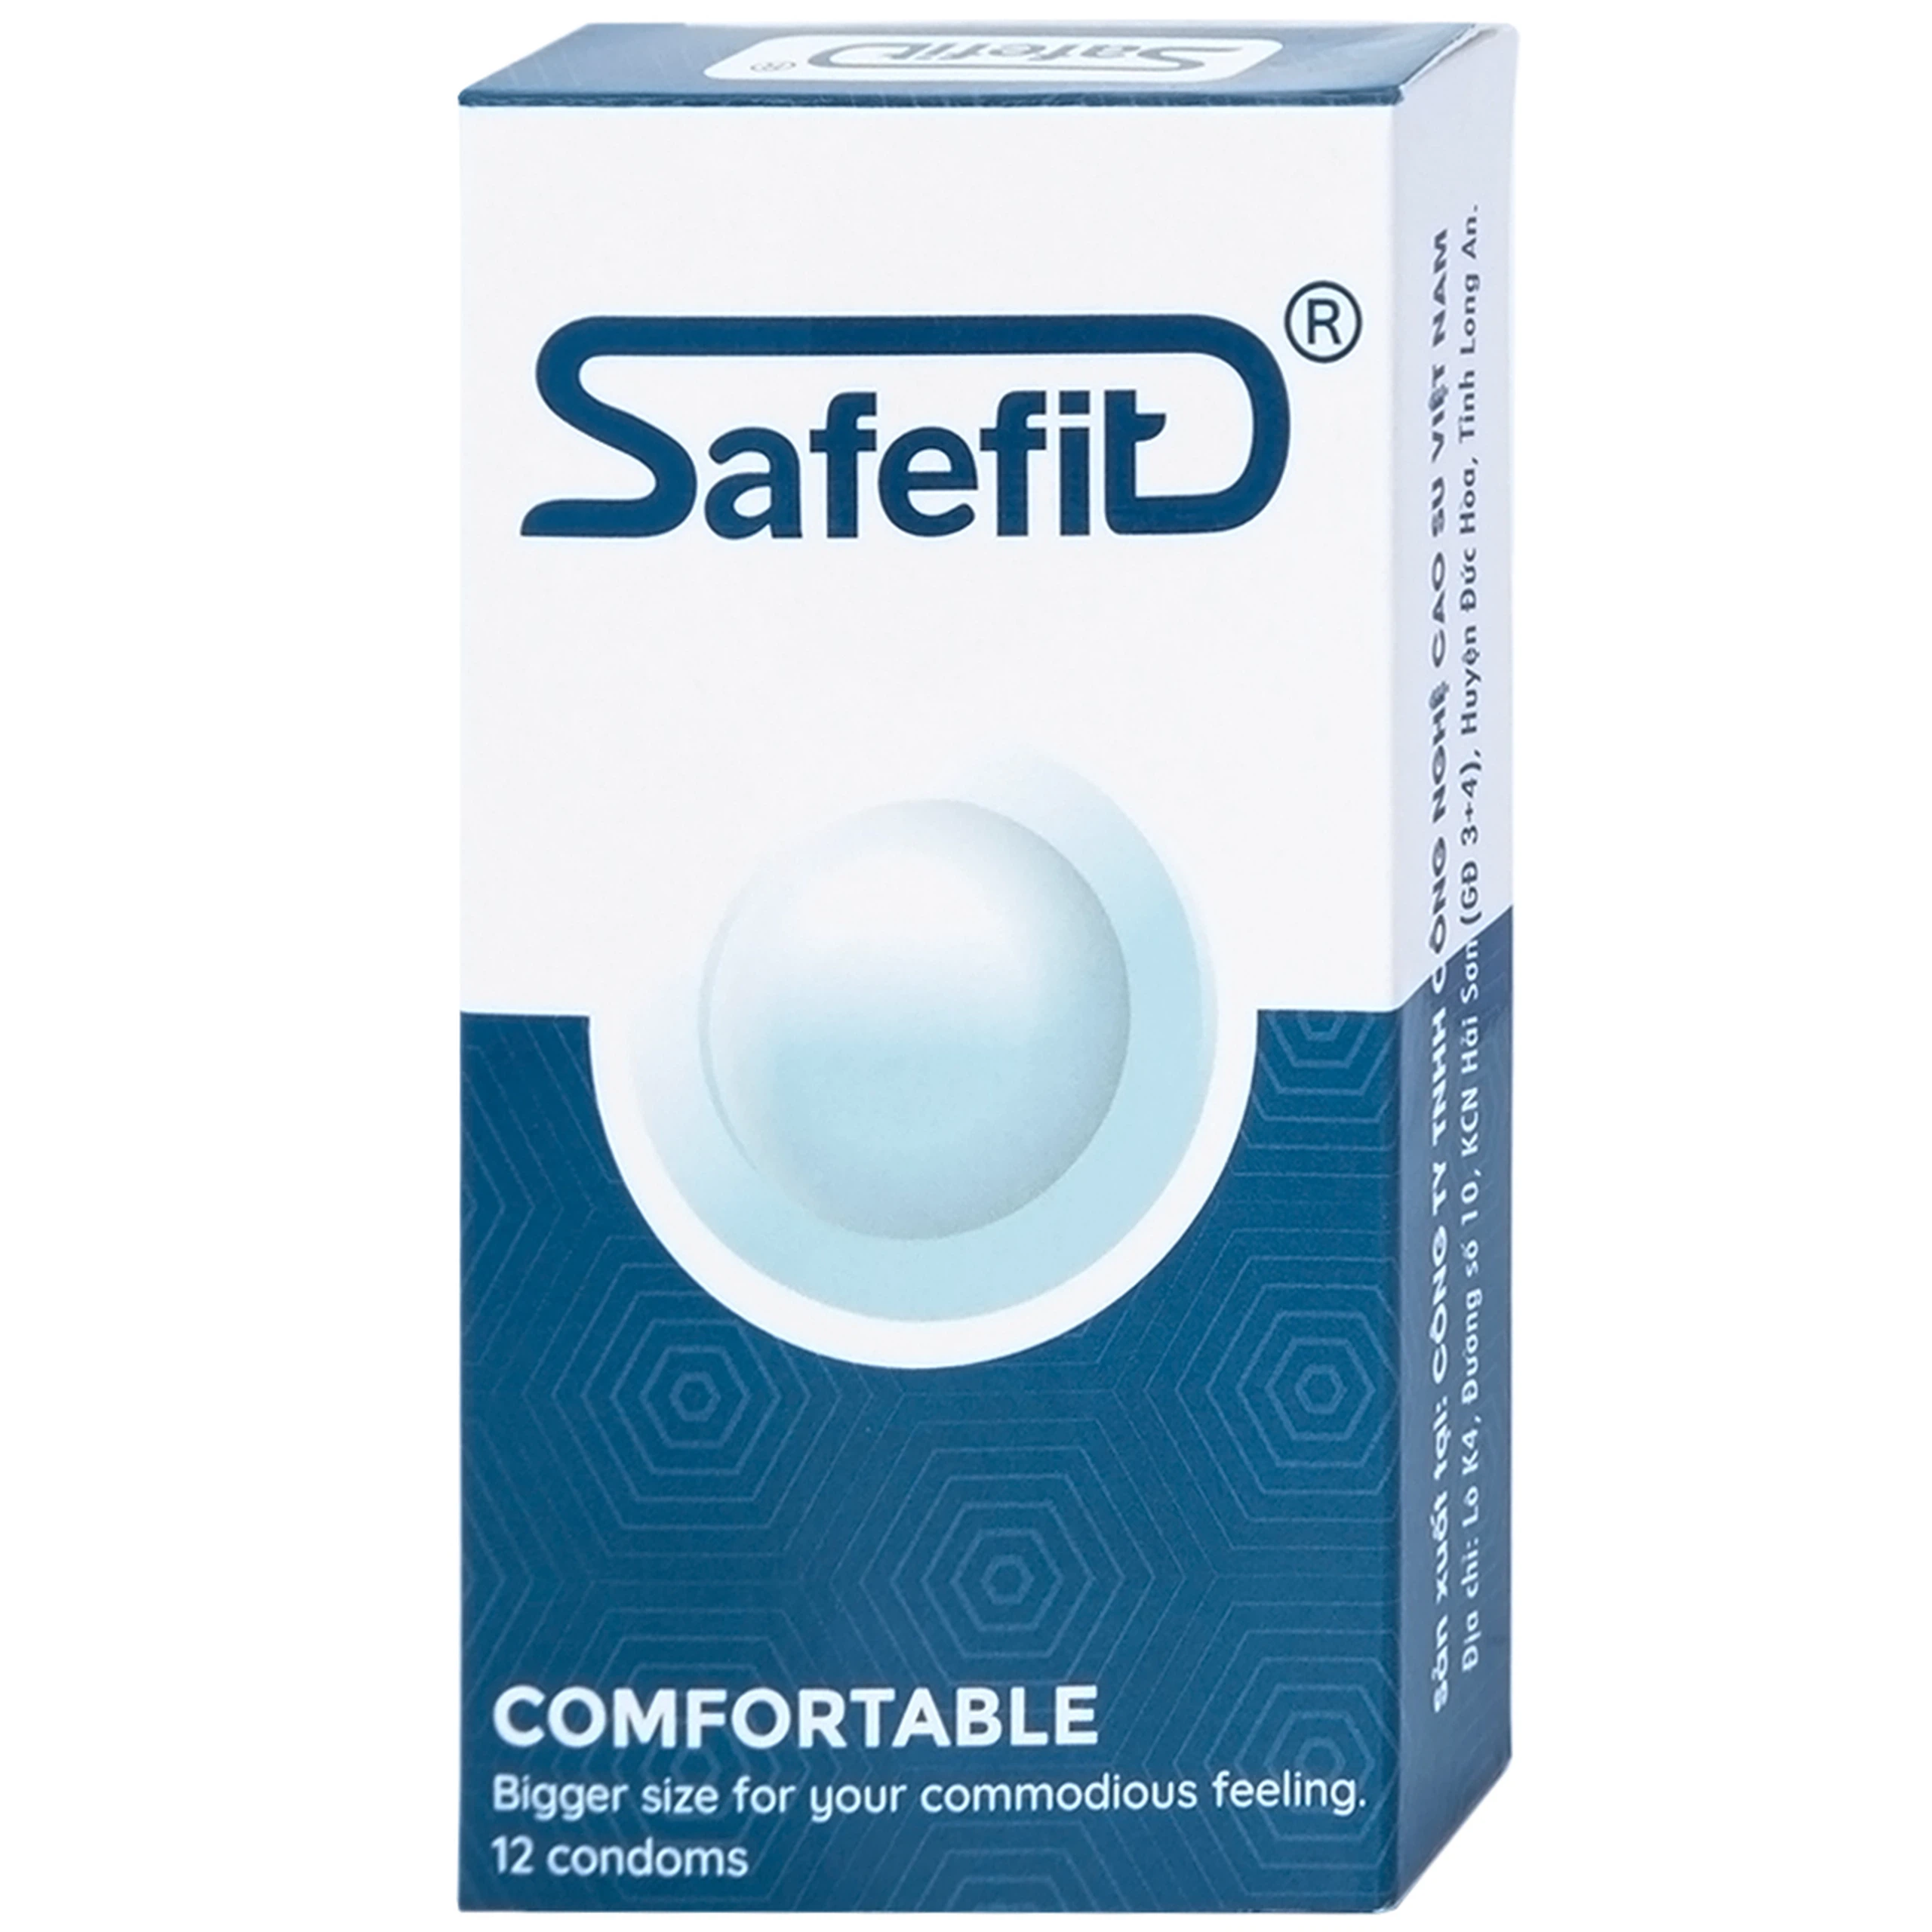 Bao cao su Safefit Comfortable S52 không mùi khó chịu, độ bền cao, khả năng co giãn tốt, chất bôi trơn (12 cái)